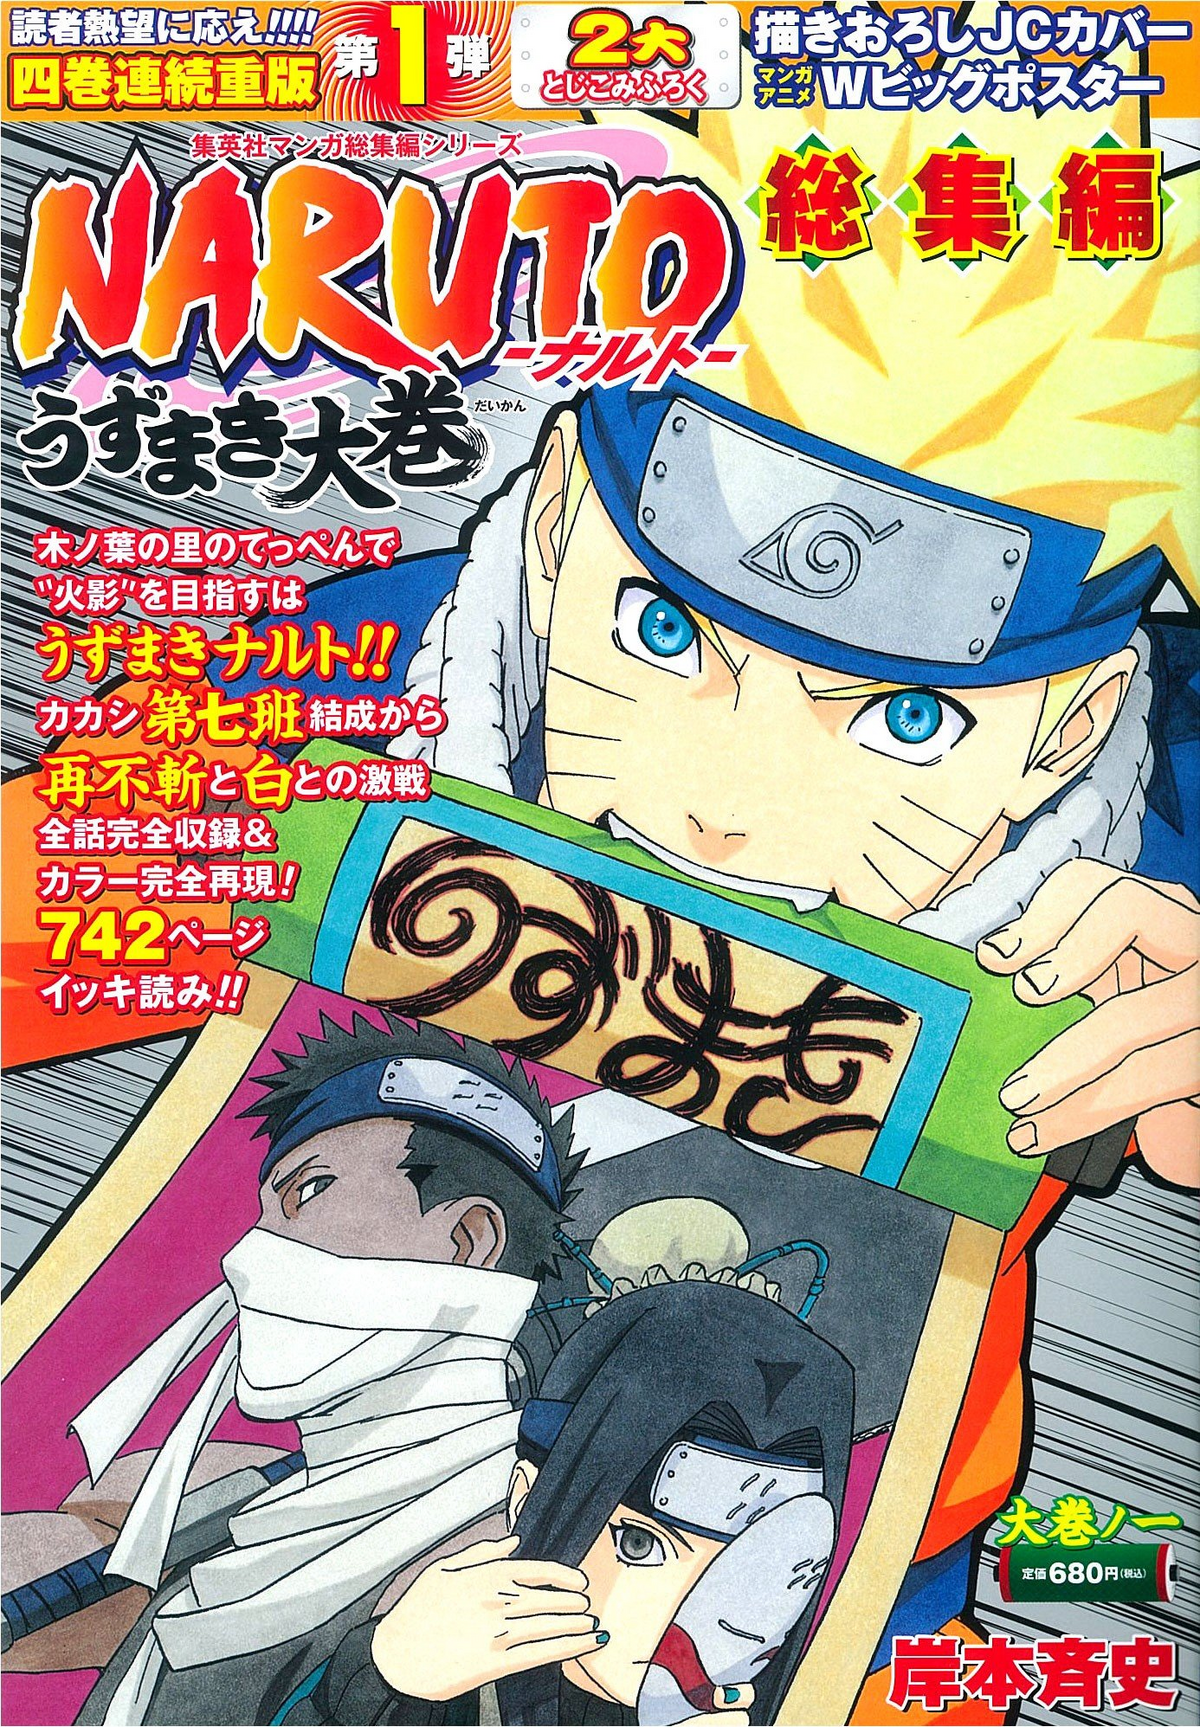 115° Episódio - Naruto Clássico, By Loucos por Animes